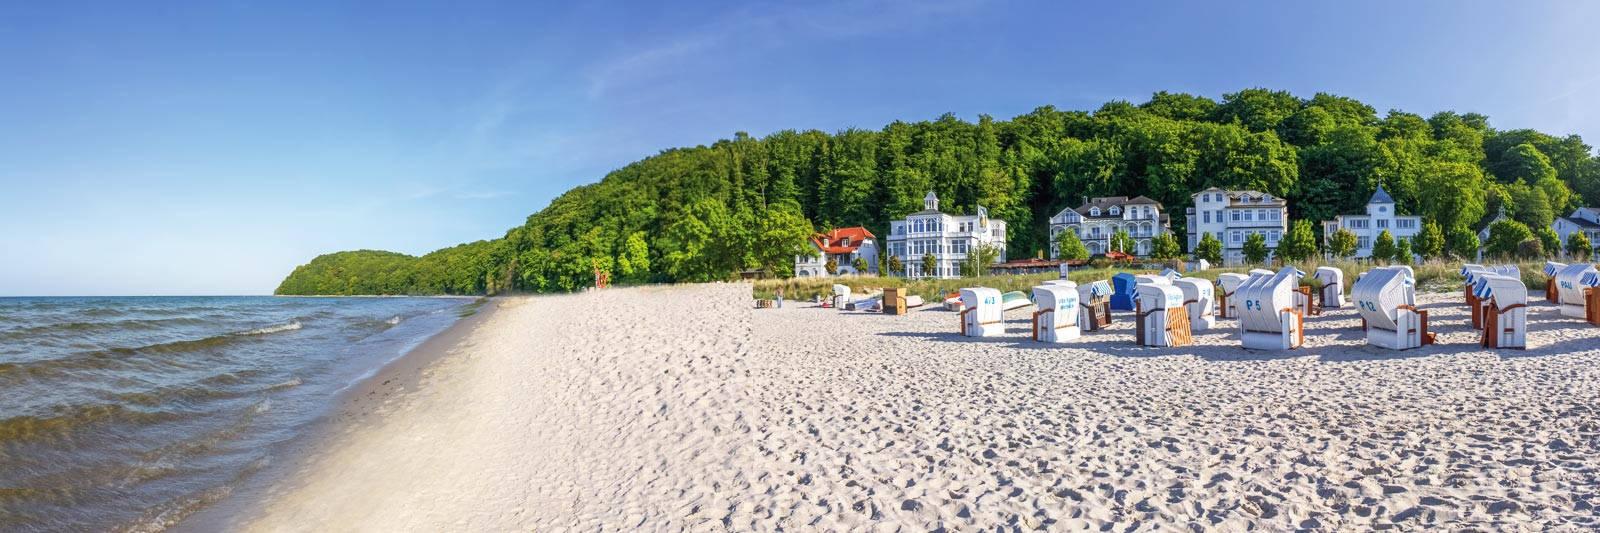 37 Ferienwohnungen und Ferienhäuser in Groß-Wokern - tourist-online.de